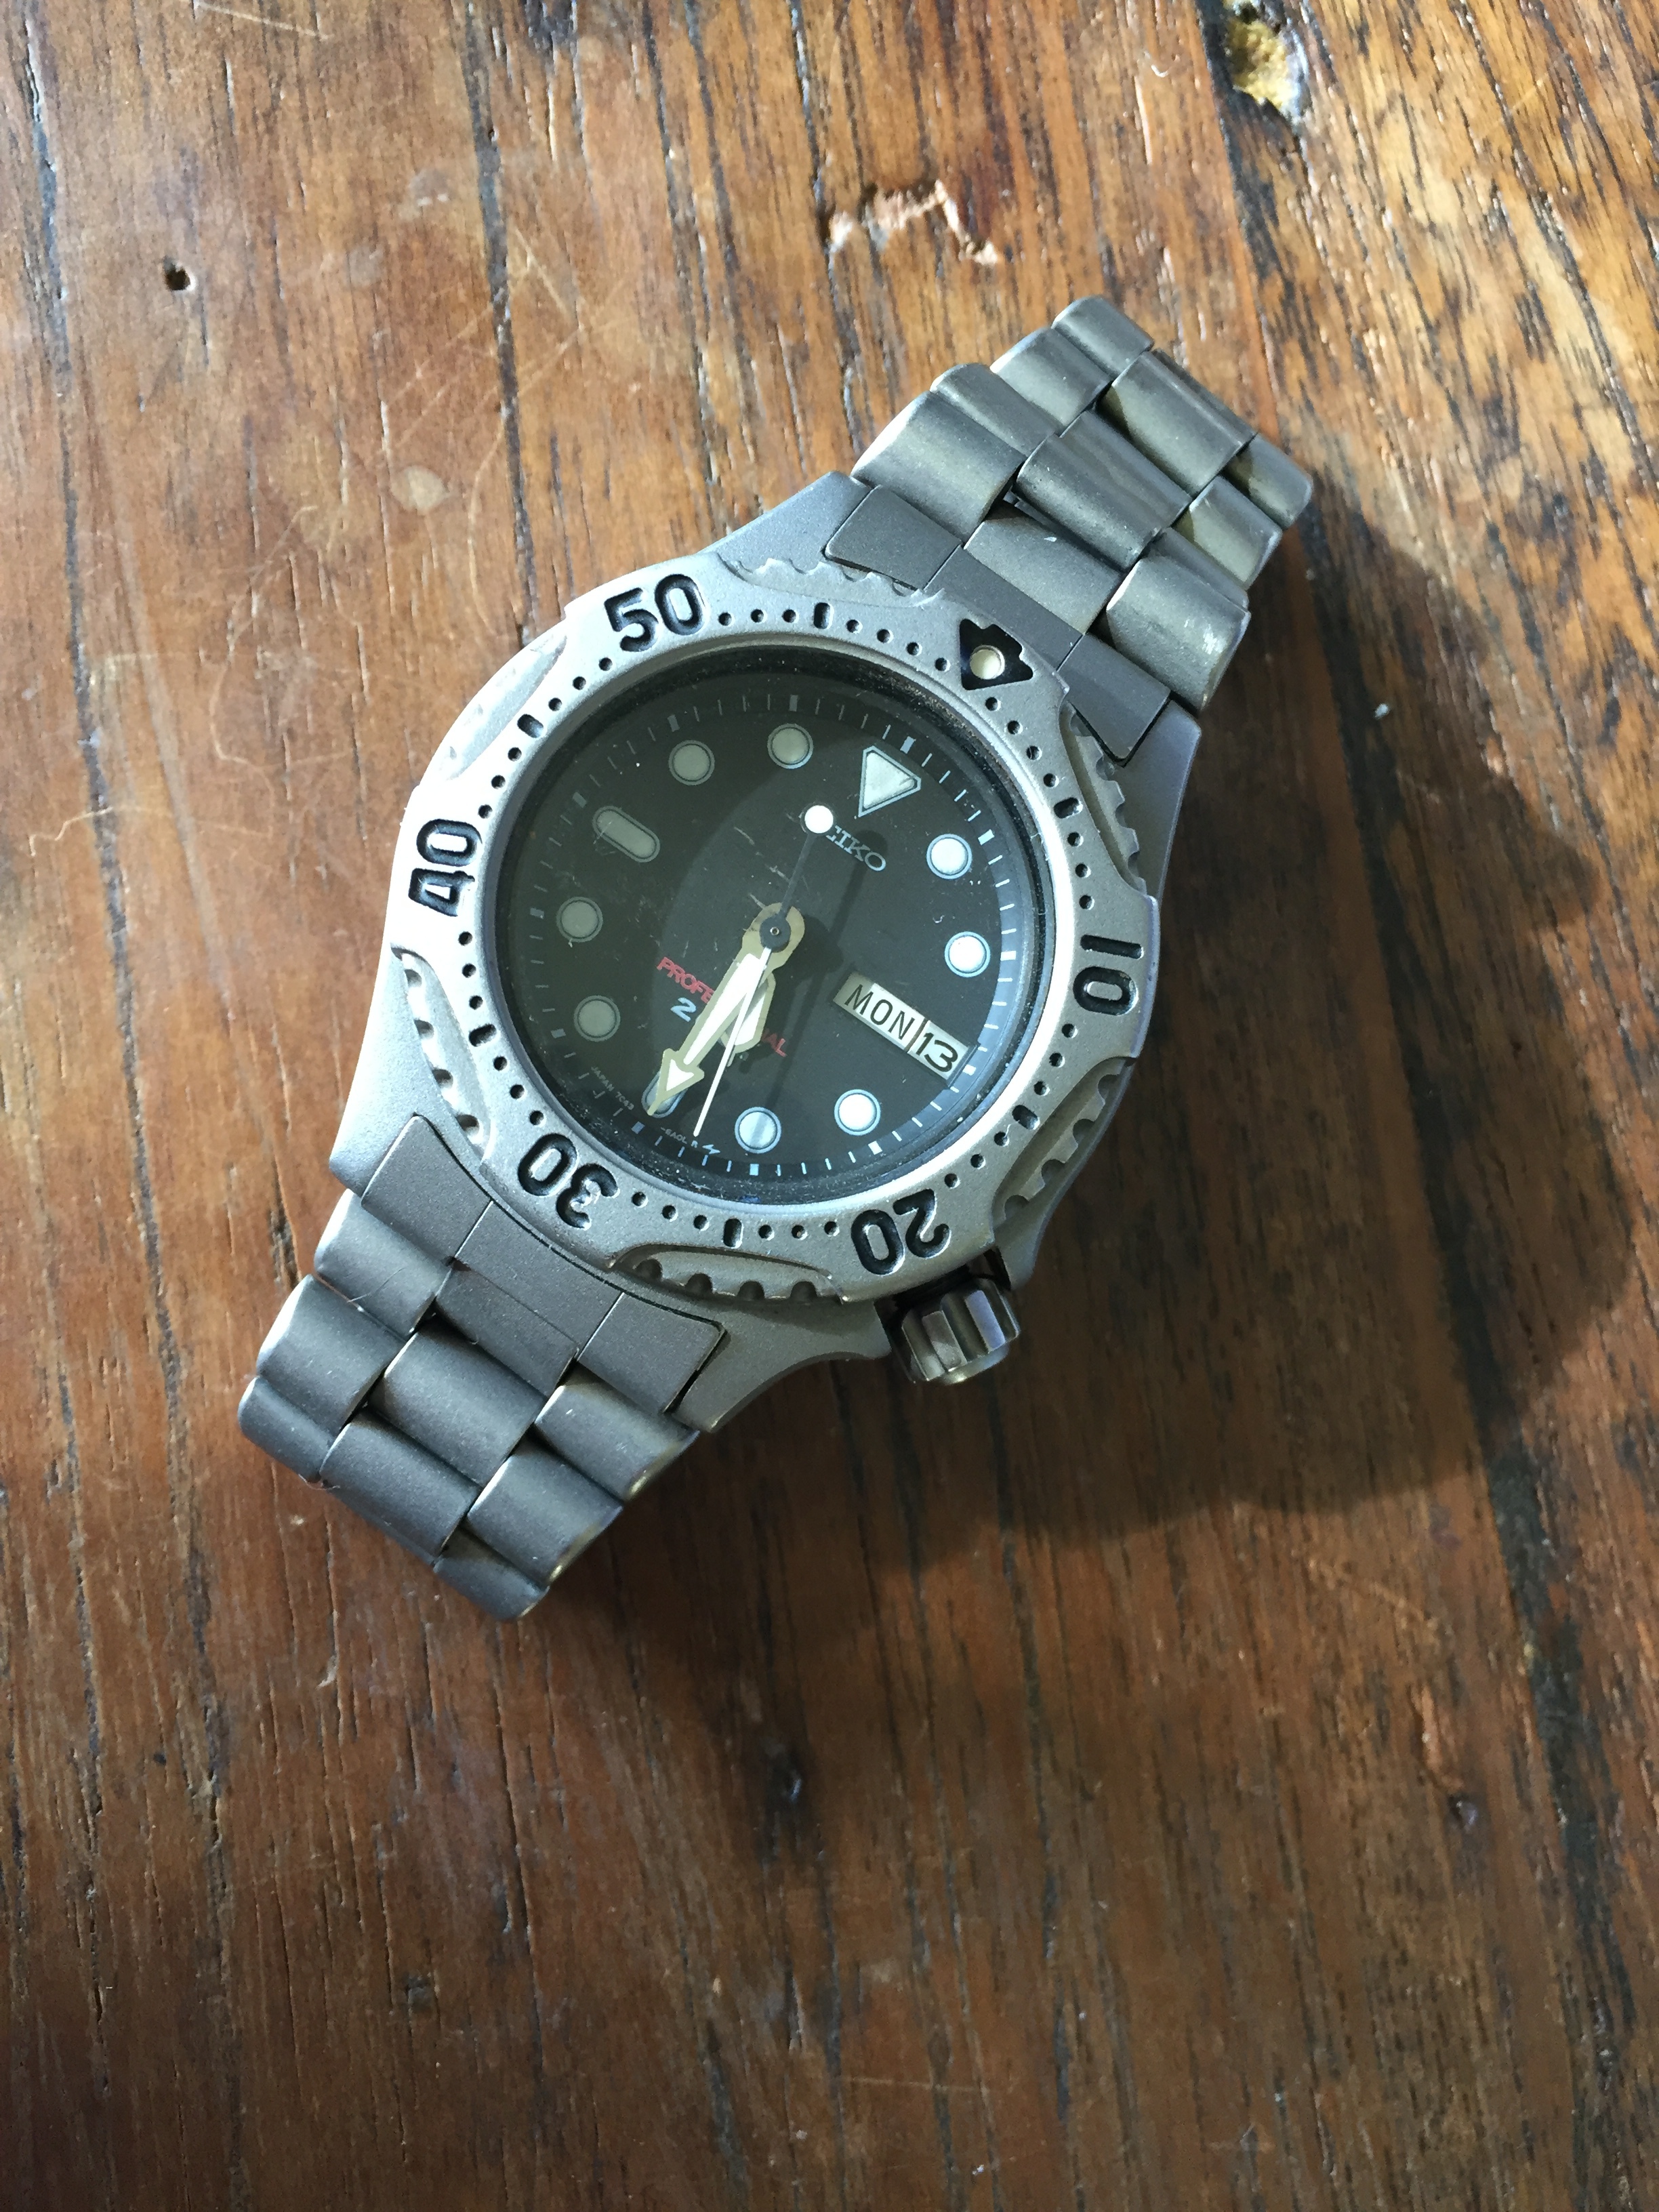 Titanium Seiko 7C43-6A10 - defect / info omtrent.. - Algemene Horlogepraat   - het forum voor liefhebbers van horloges